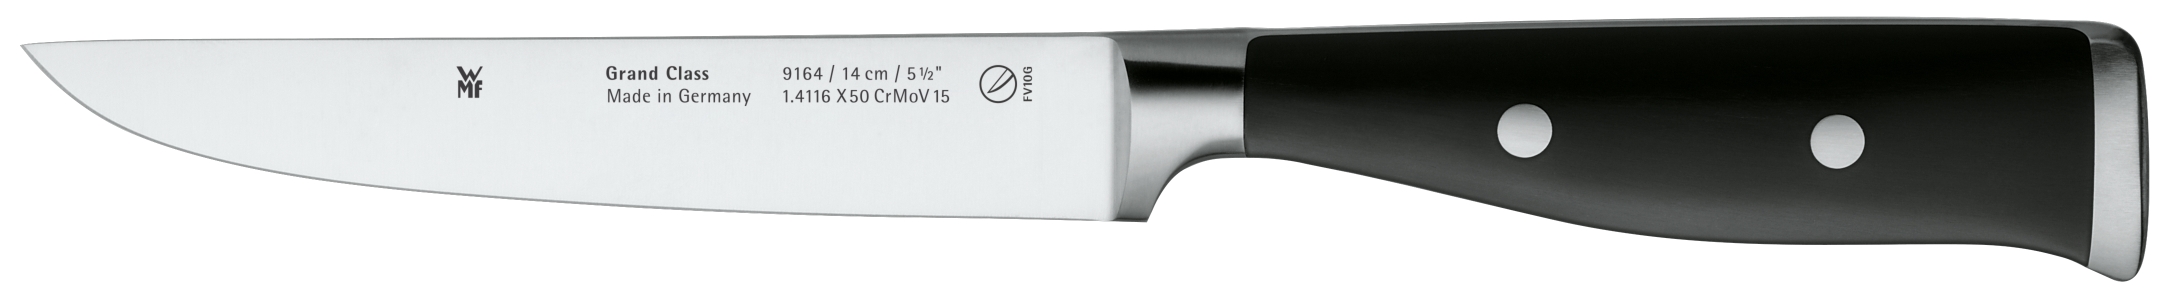 Универсальный нож Grand Class 14 см шлейф универсальный 24pin шаг 0 5мм длина 20см